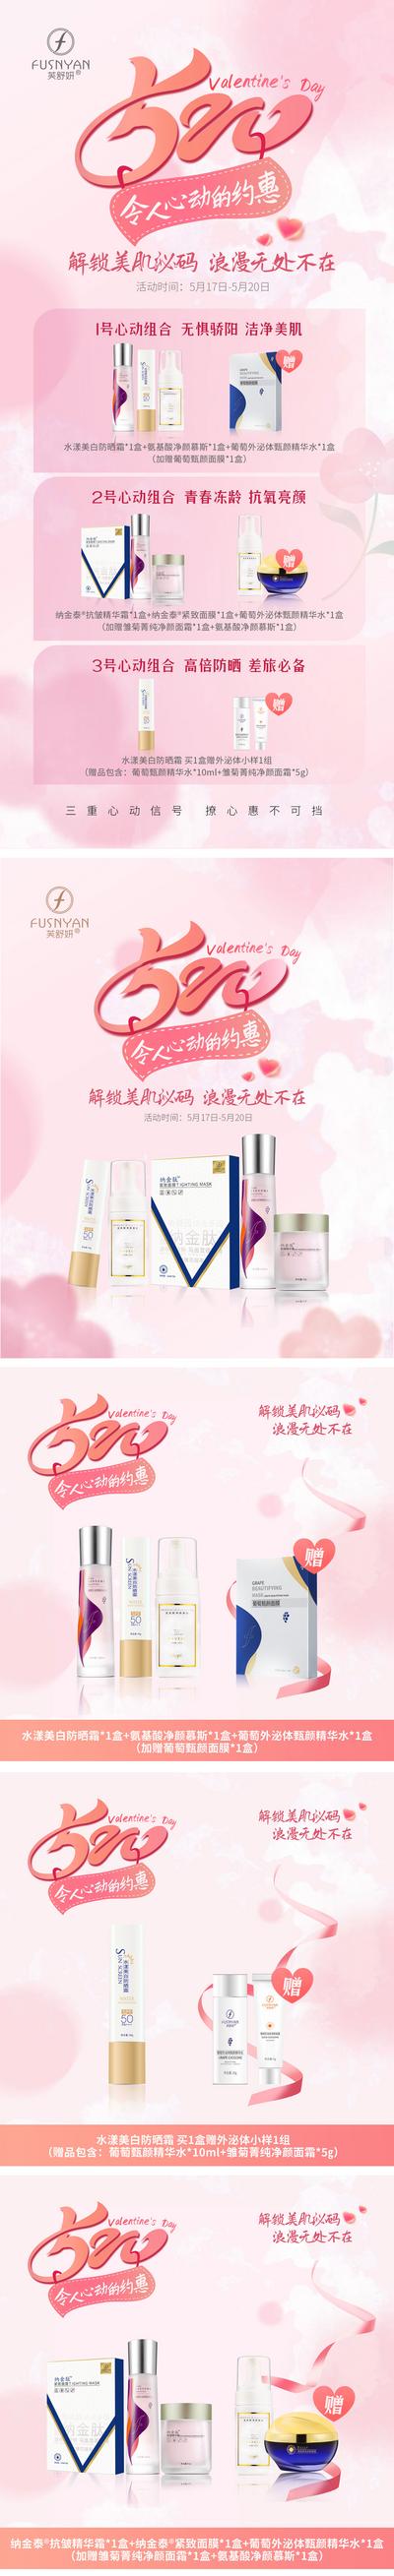 南门网 海报 长图 公历节日 520 产品 化妆品 活动